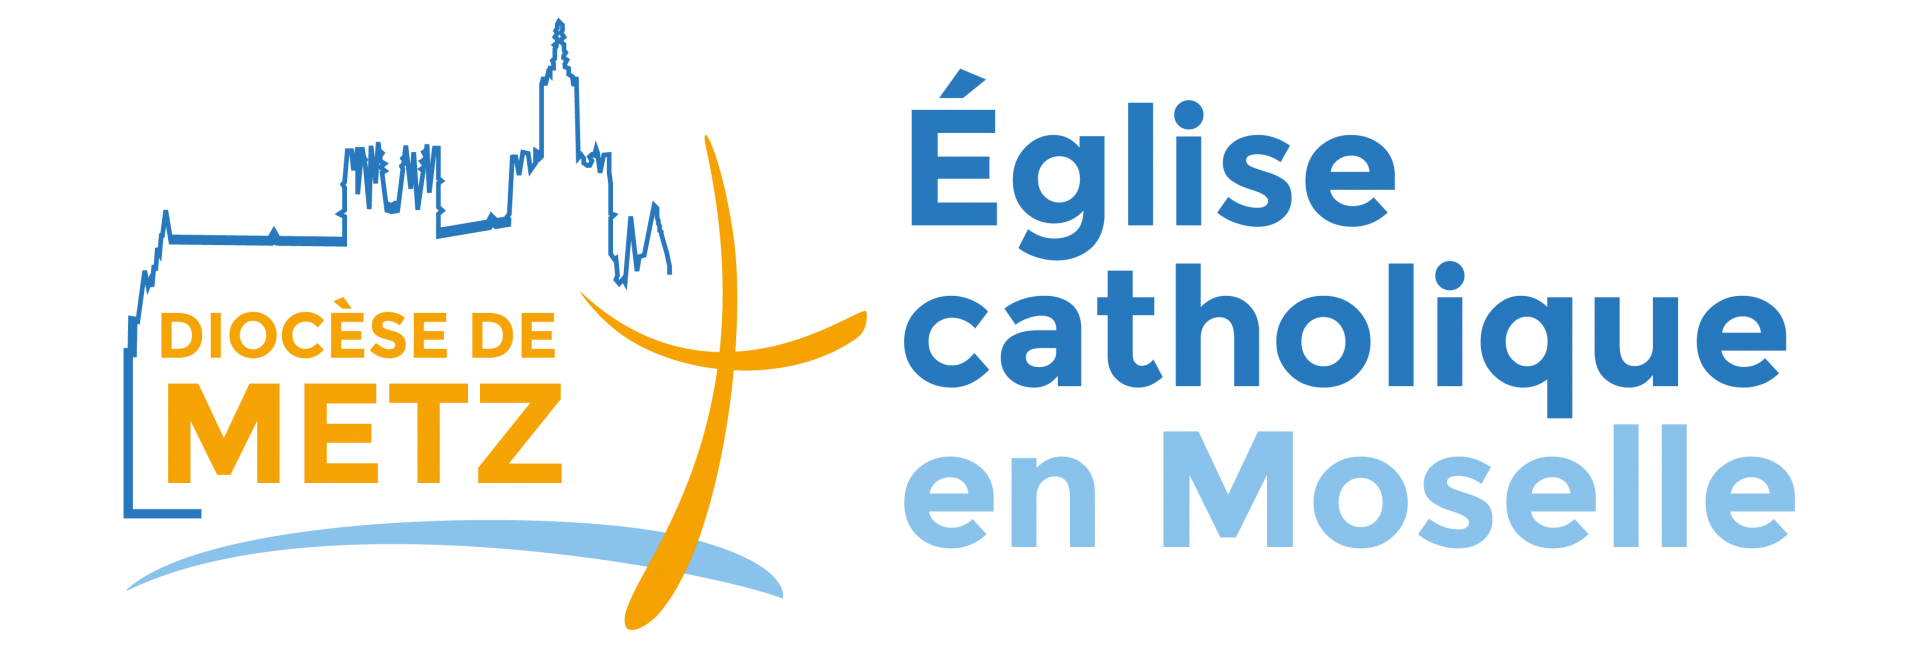 Logo diocese metz 2021 menu site